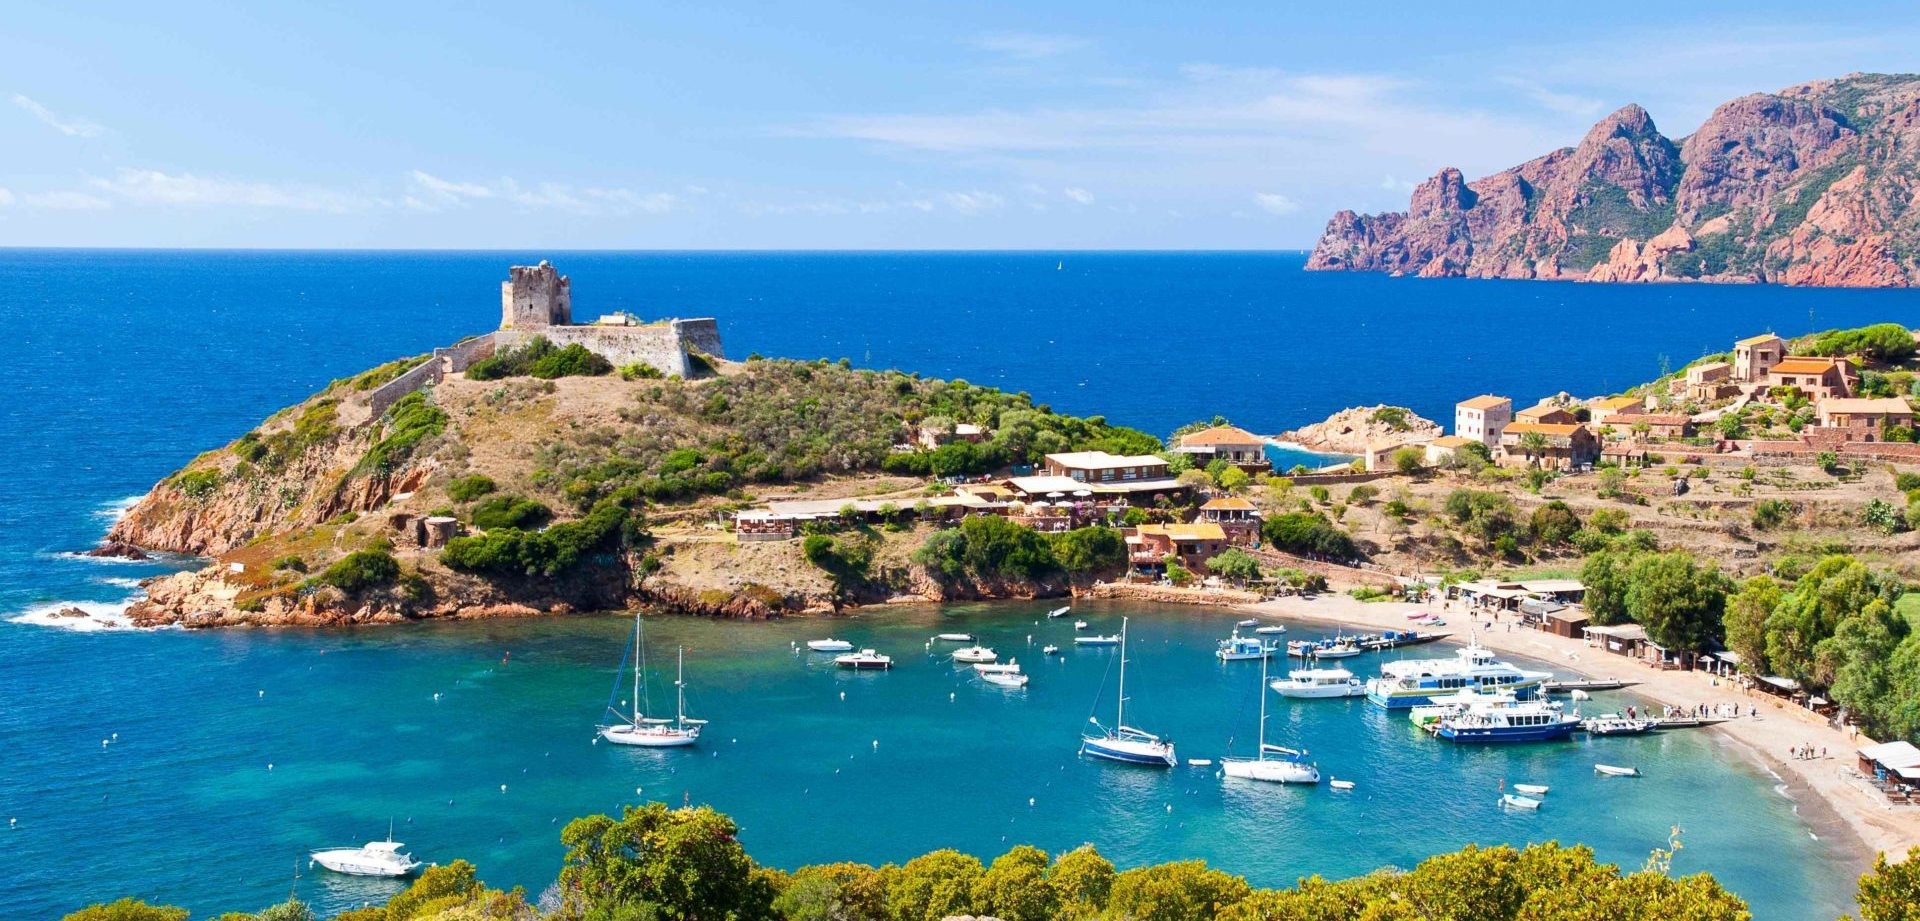 Crociera "All Inclusive": Corsica in catamarano